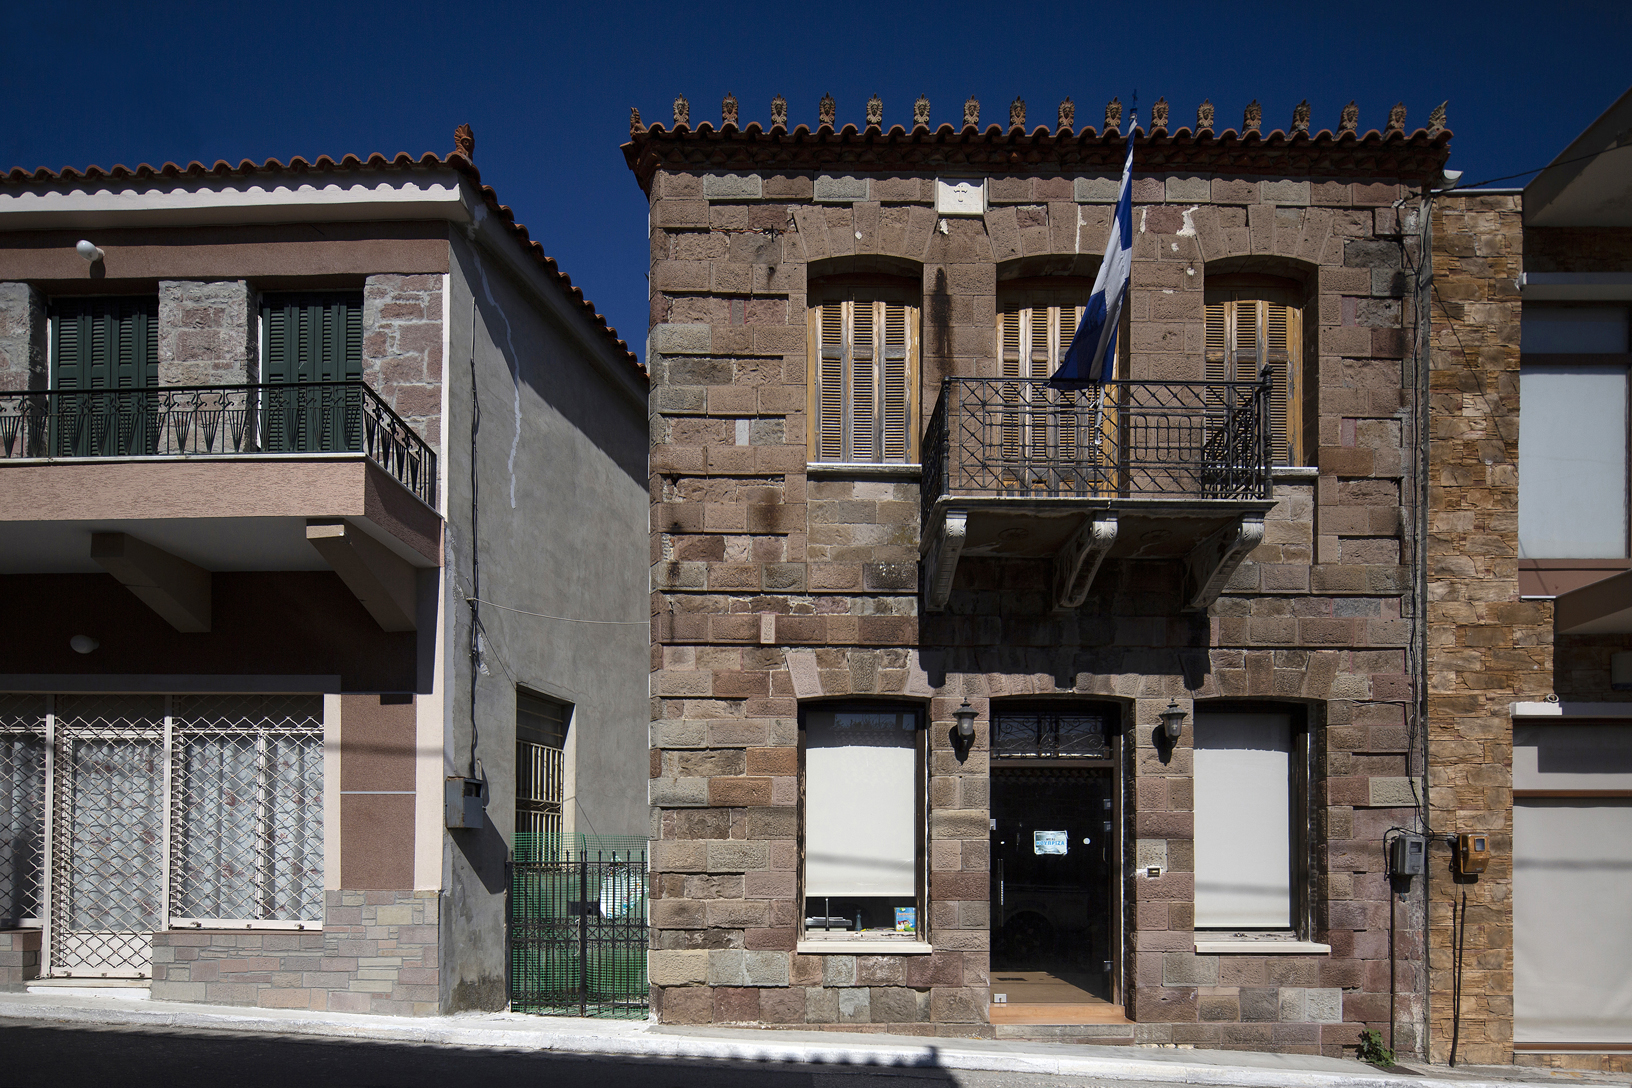 Πέτρινη οικία, οδός Λιαροπούλου, χωριό Κονίστρες. Φωτογραφία: ©Βασίλης Συκάς, για τον Δήμο Κύμης-Αλιβερίου